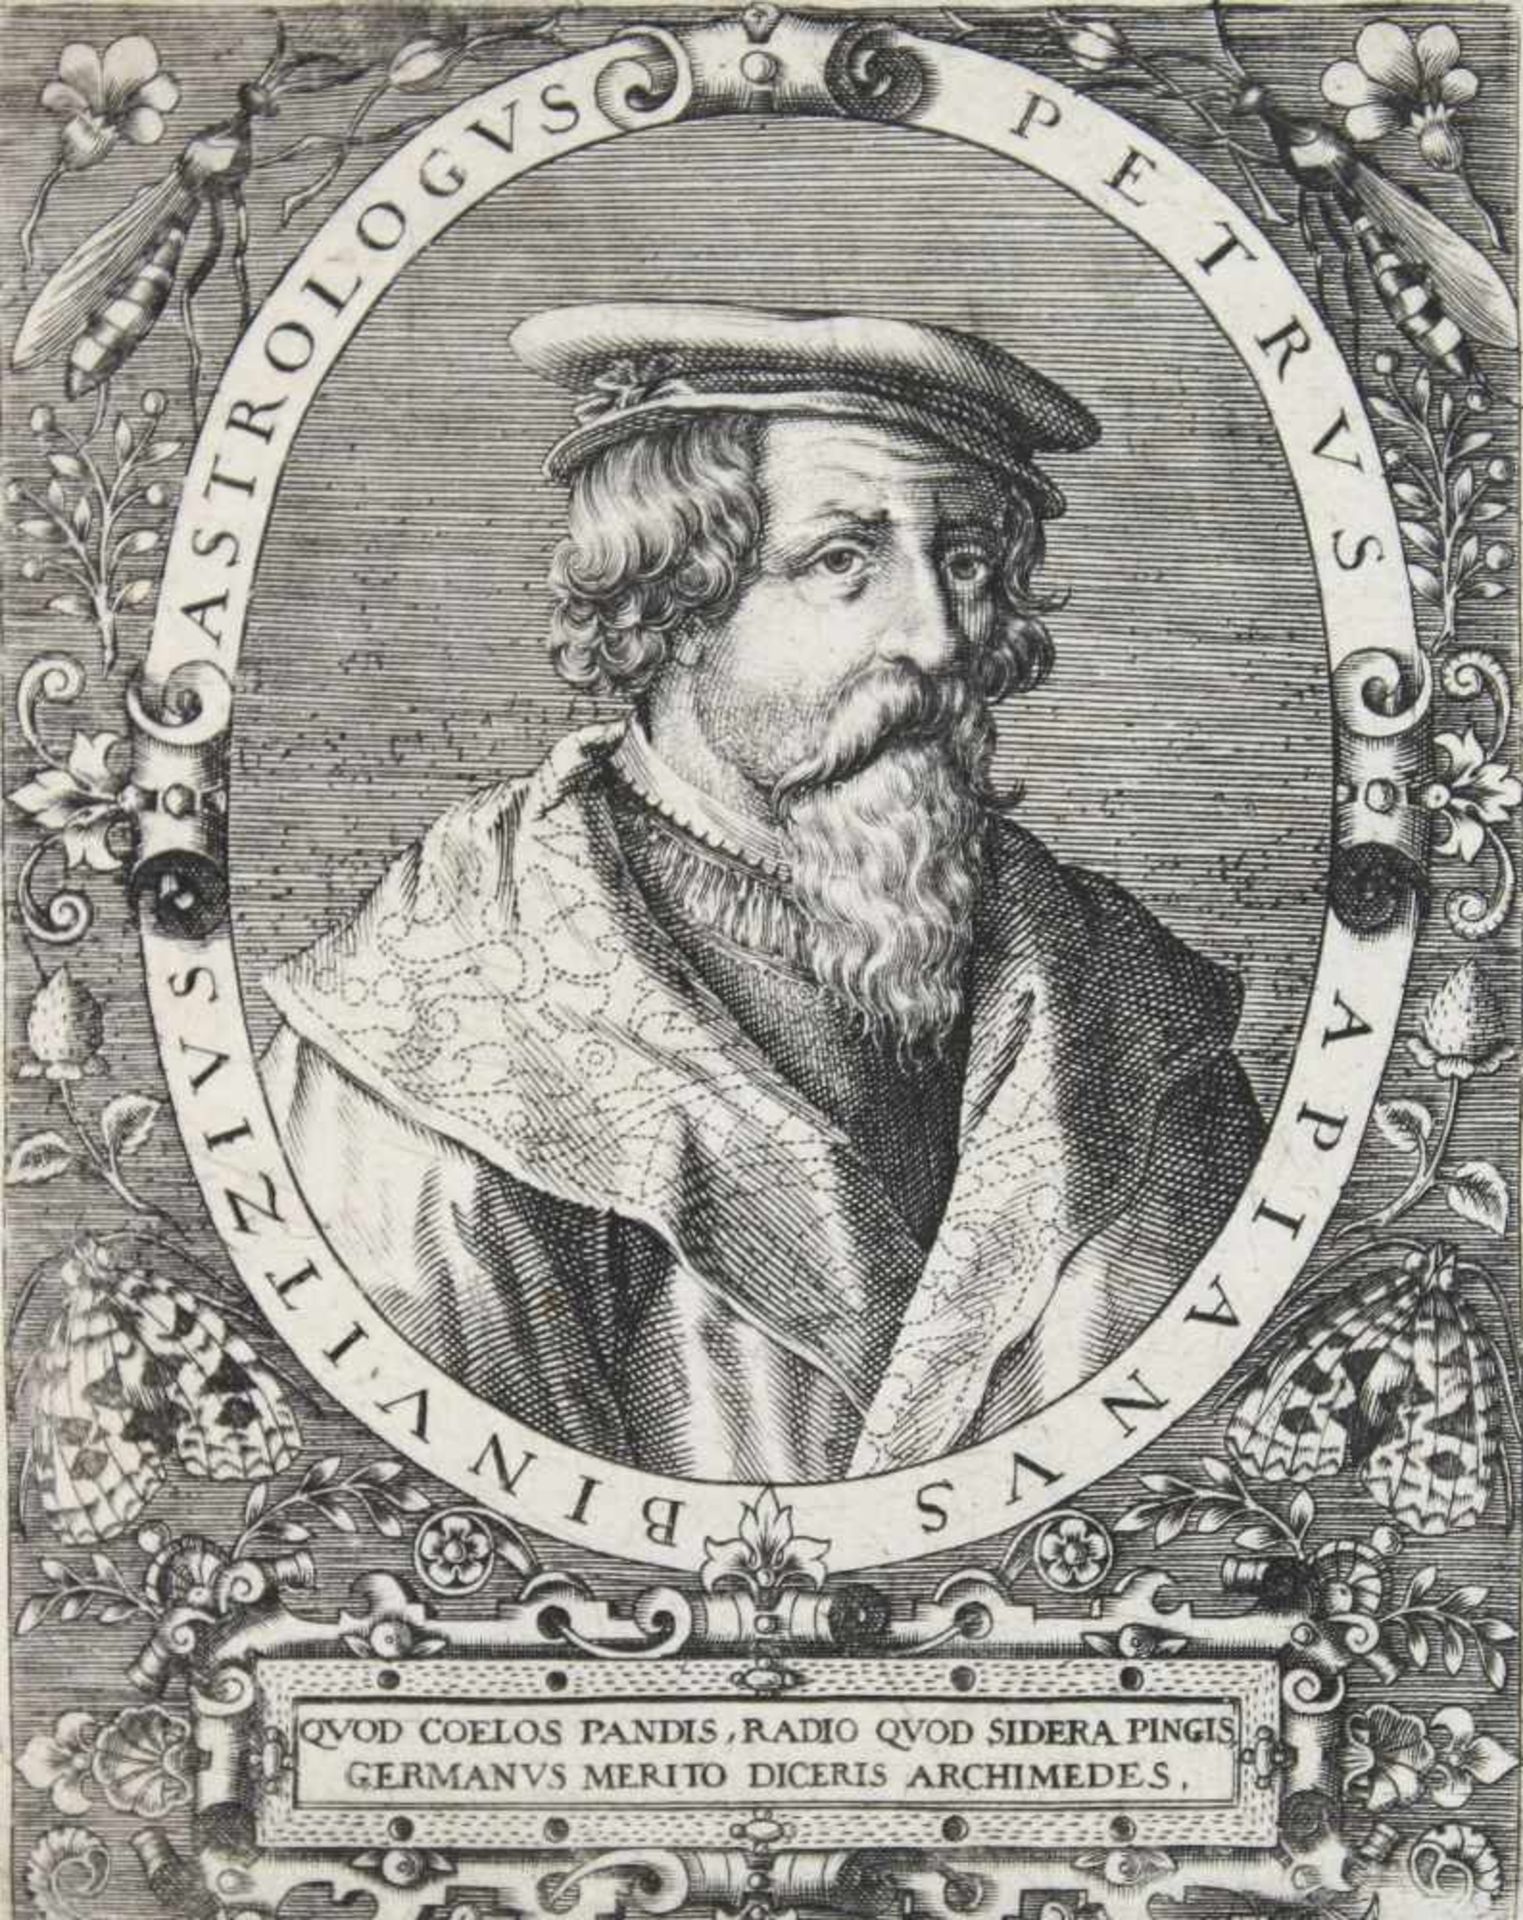 Apian, Peter.(1495-1552). Binvitzius Atrologus Petrus Apianus. Brustbild des Astrononen, Mathem